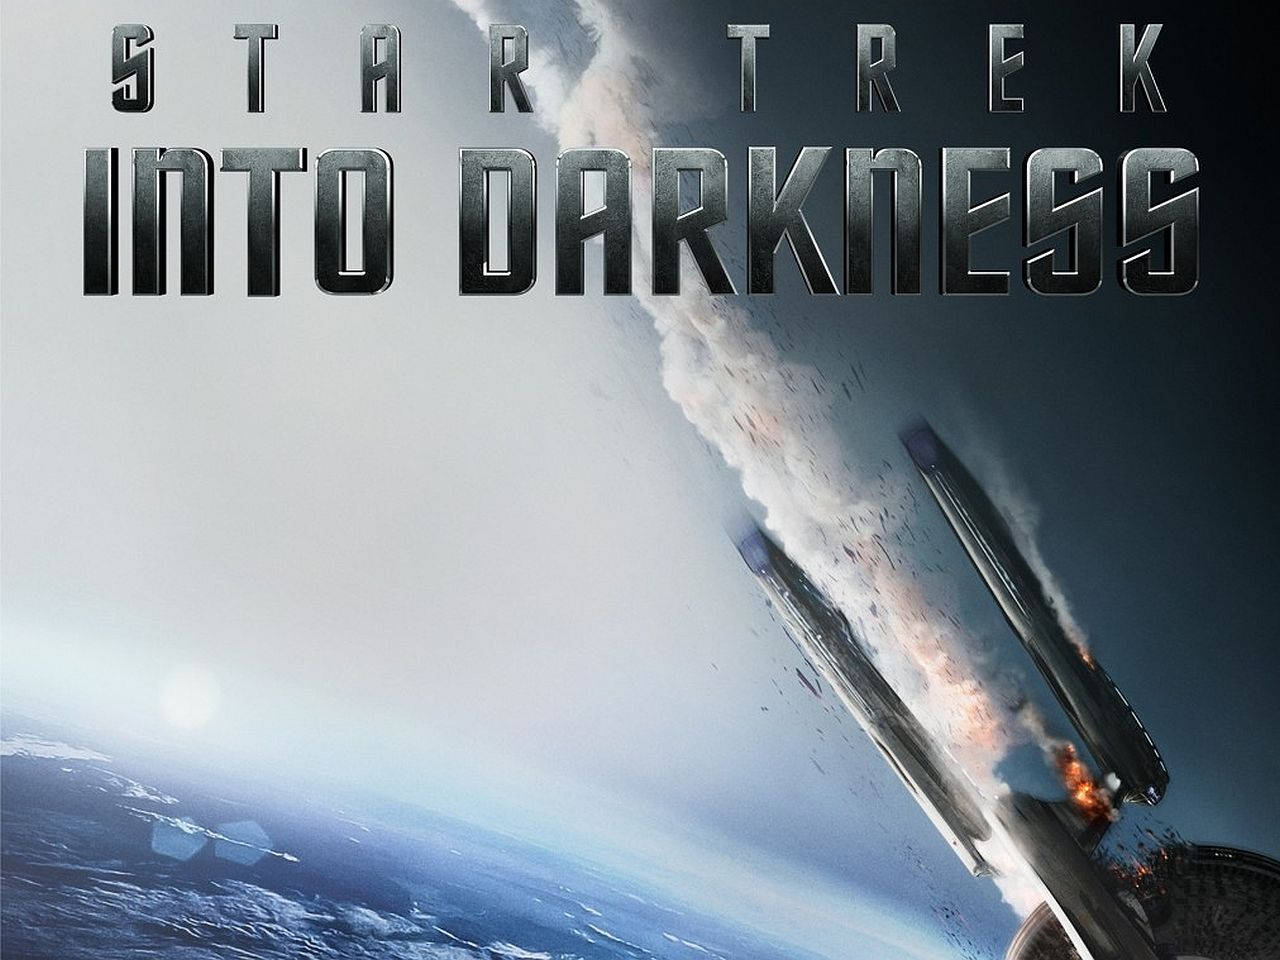 Star Trek Into Darkness Spaceship Poster Background